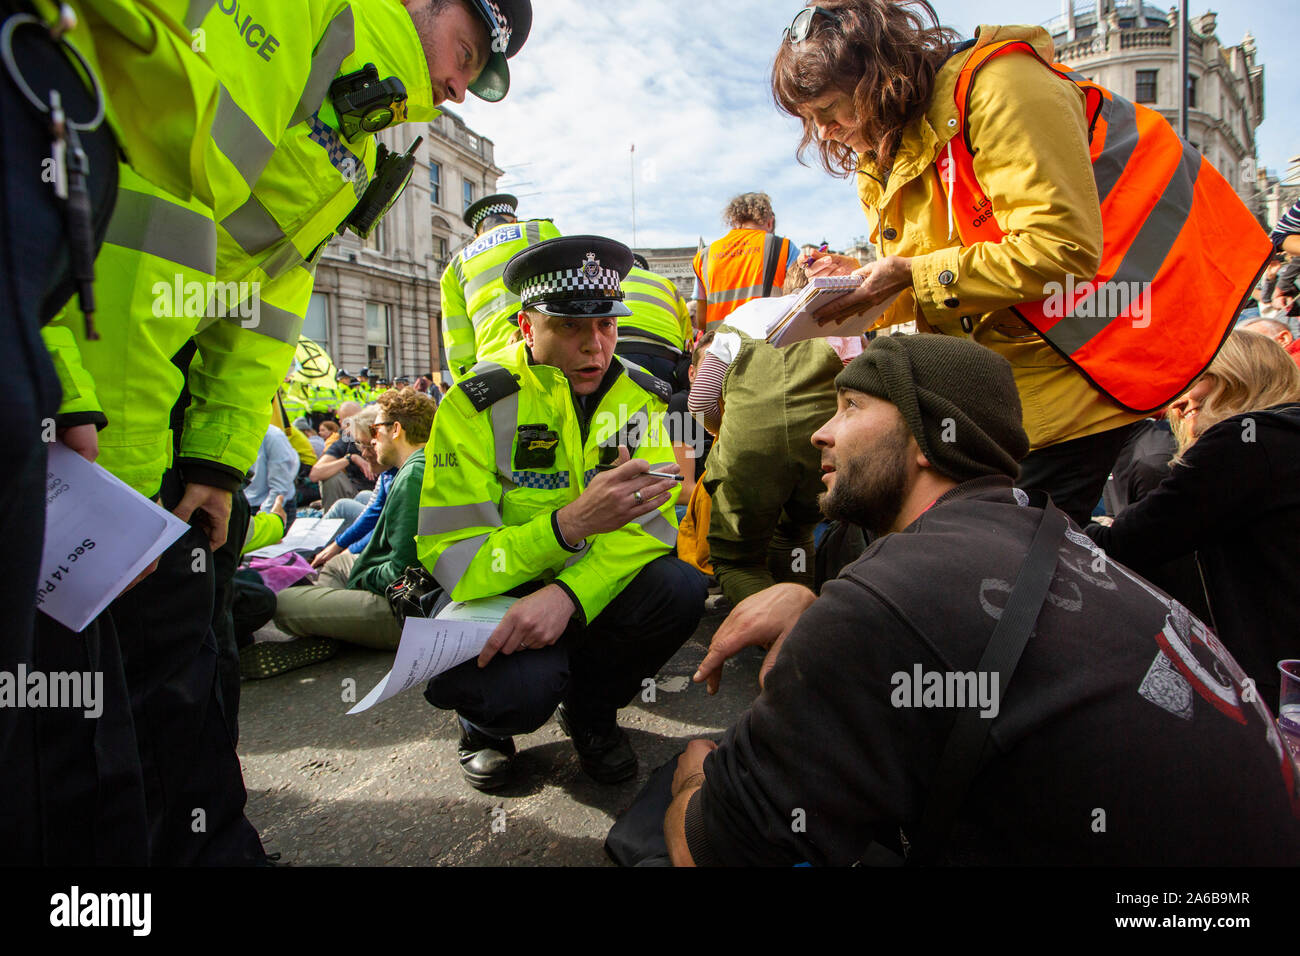 Londres, 10 octobre 2019, l'extinction et l'occupation de démonstration rébellion Trafalgar Square. Dans la Police de foule occupant la route, à procéder à des arrestations. Banque D'Images